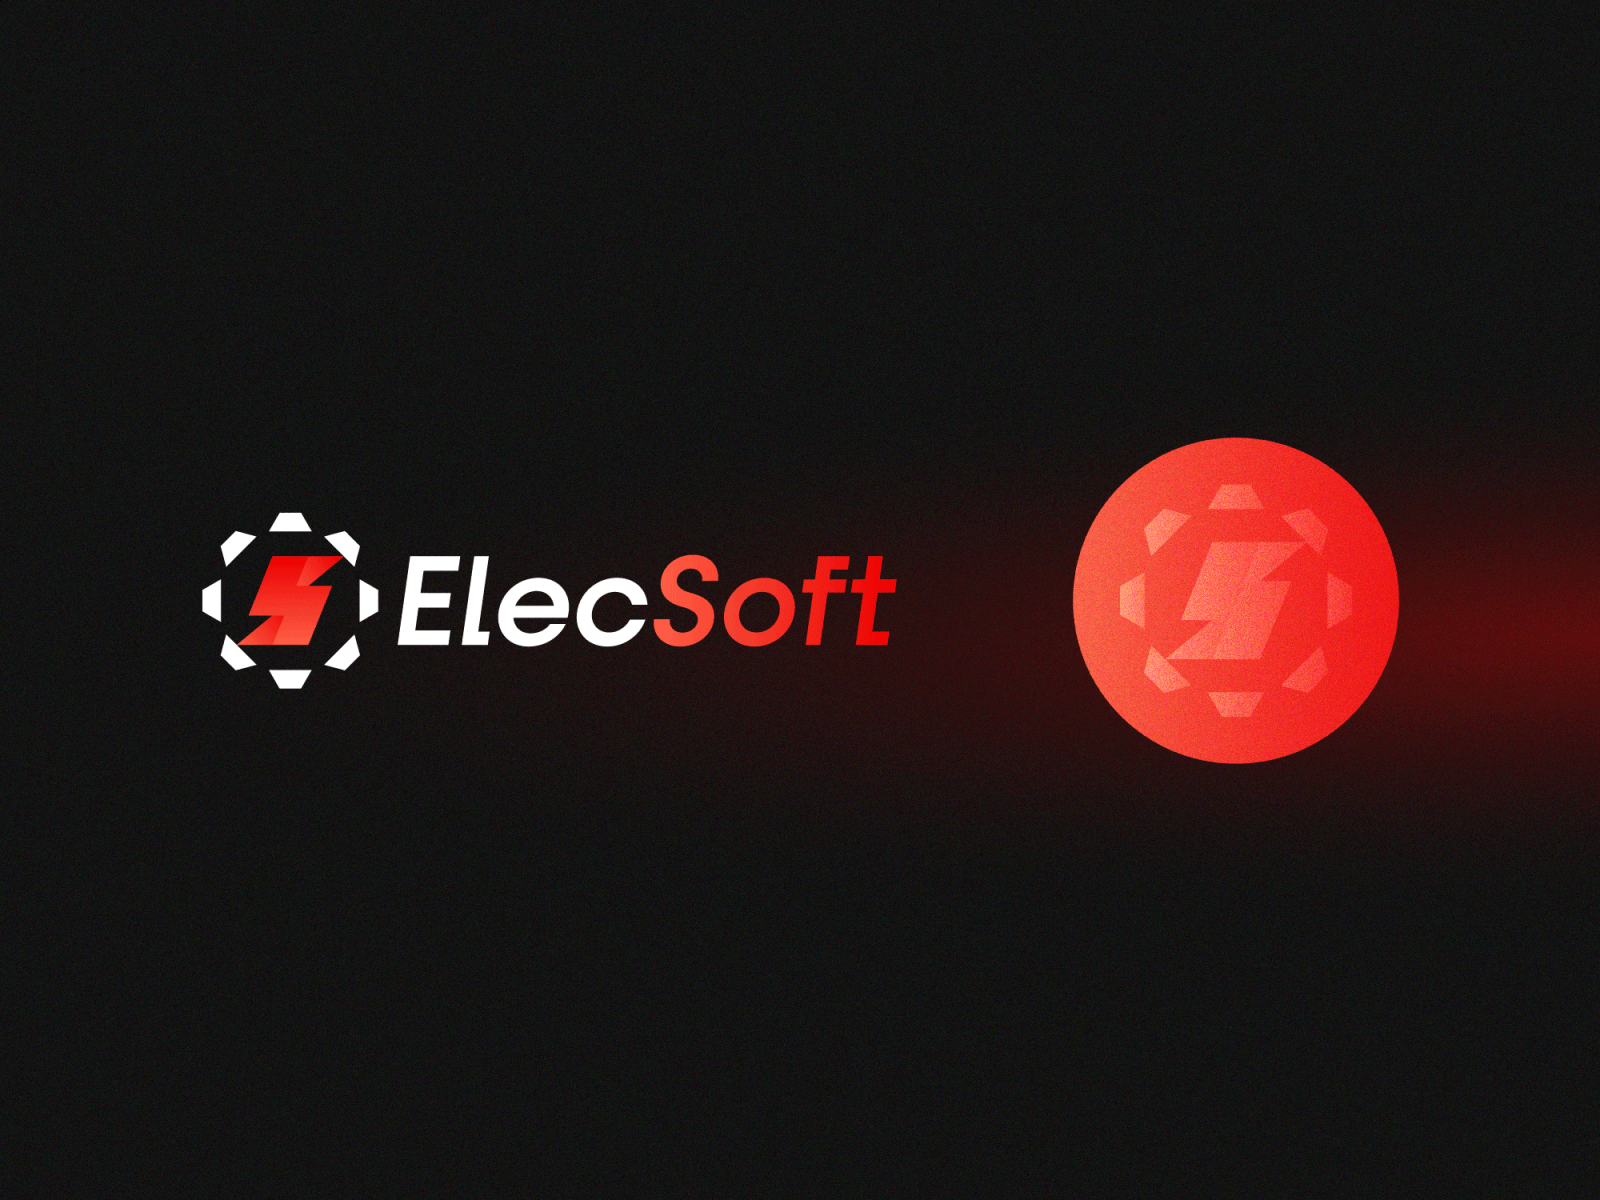 ElecSoft